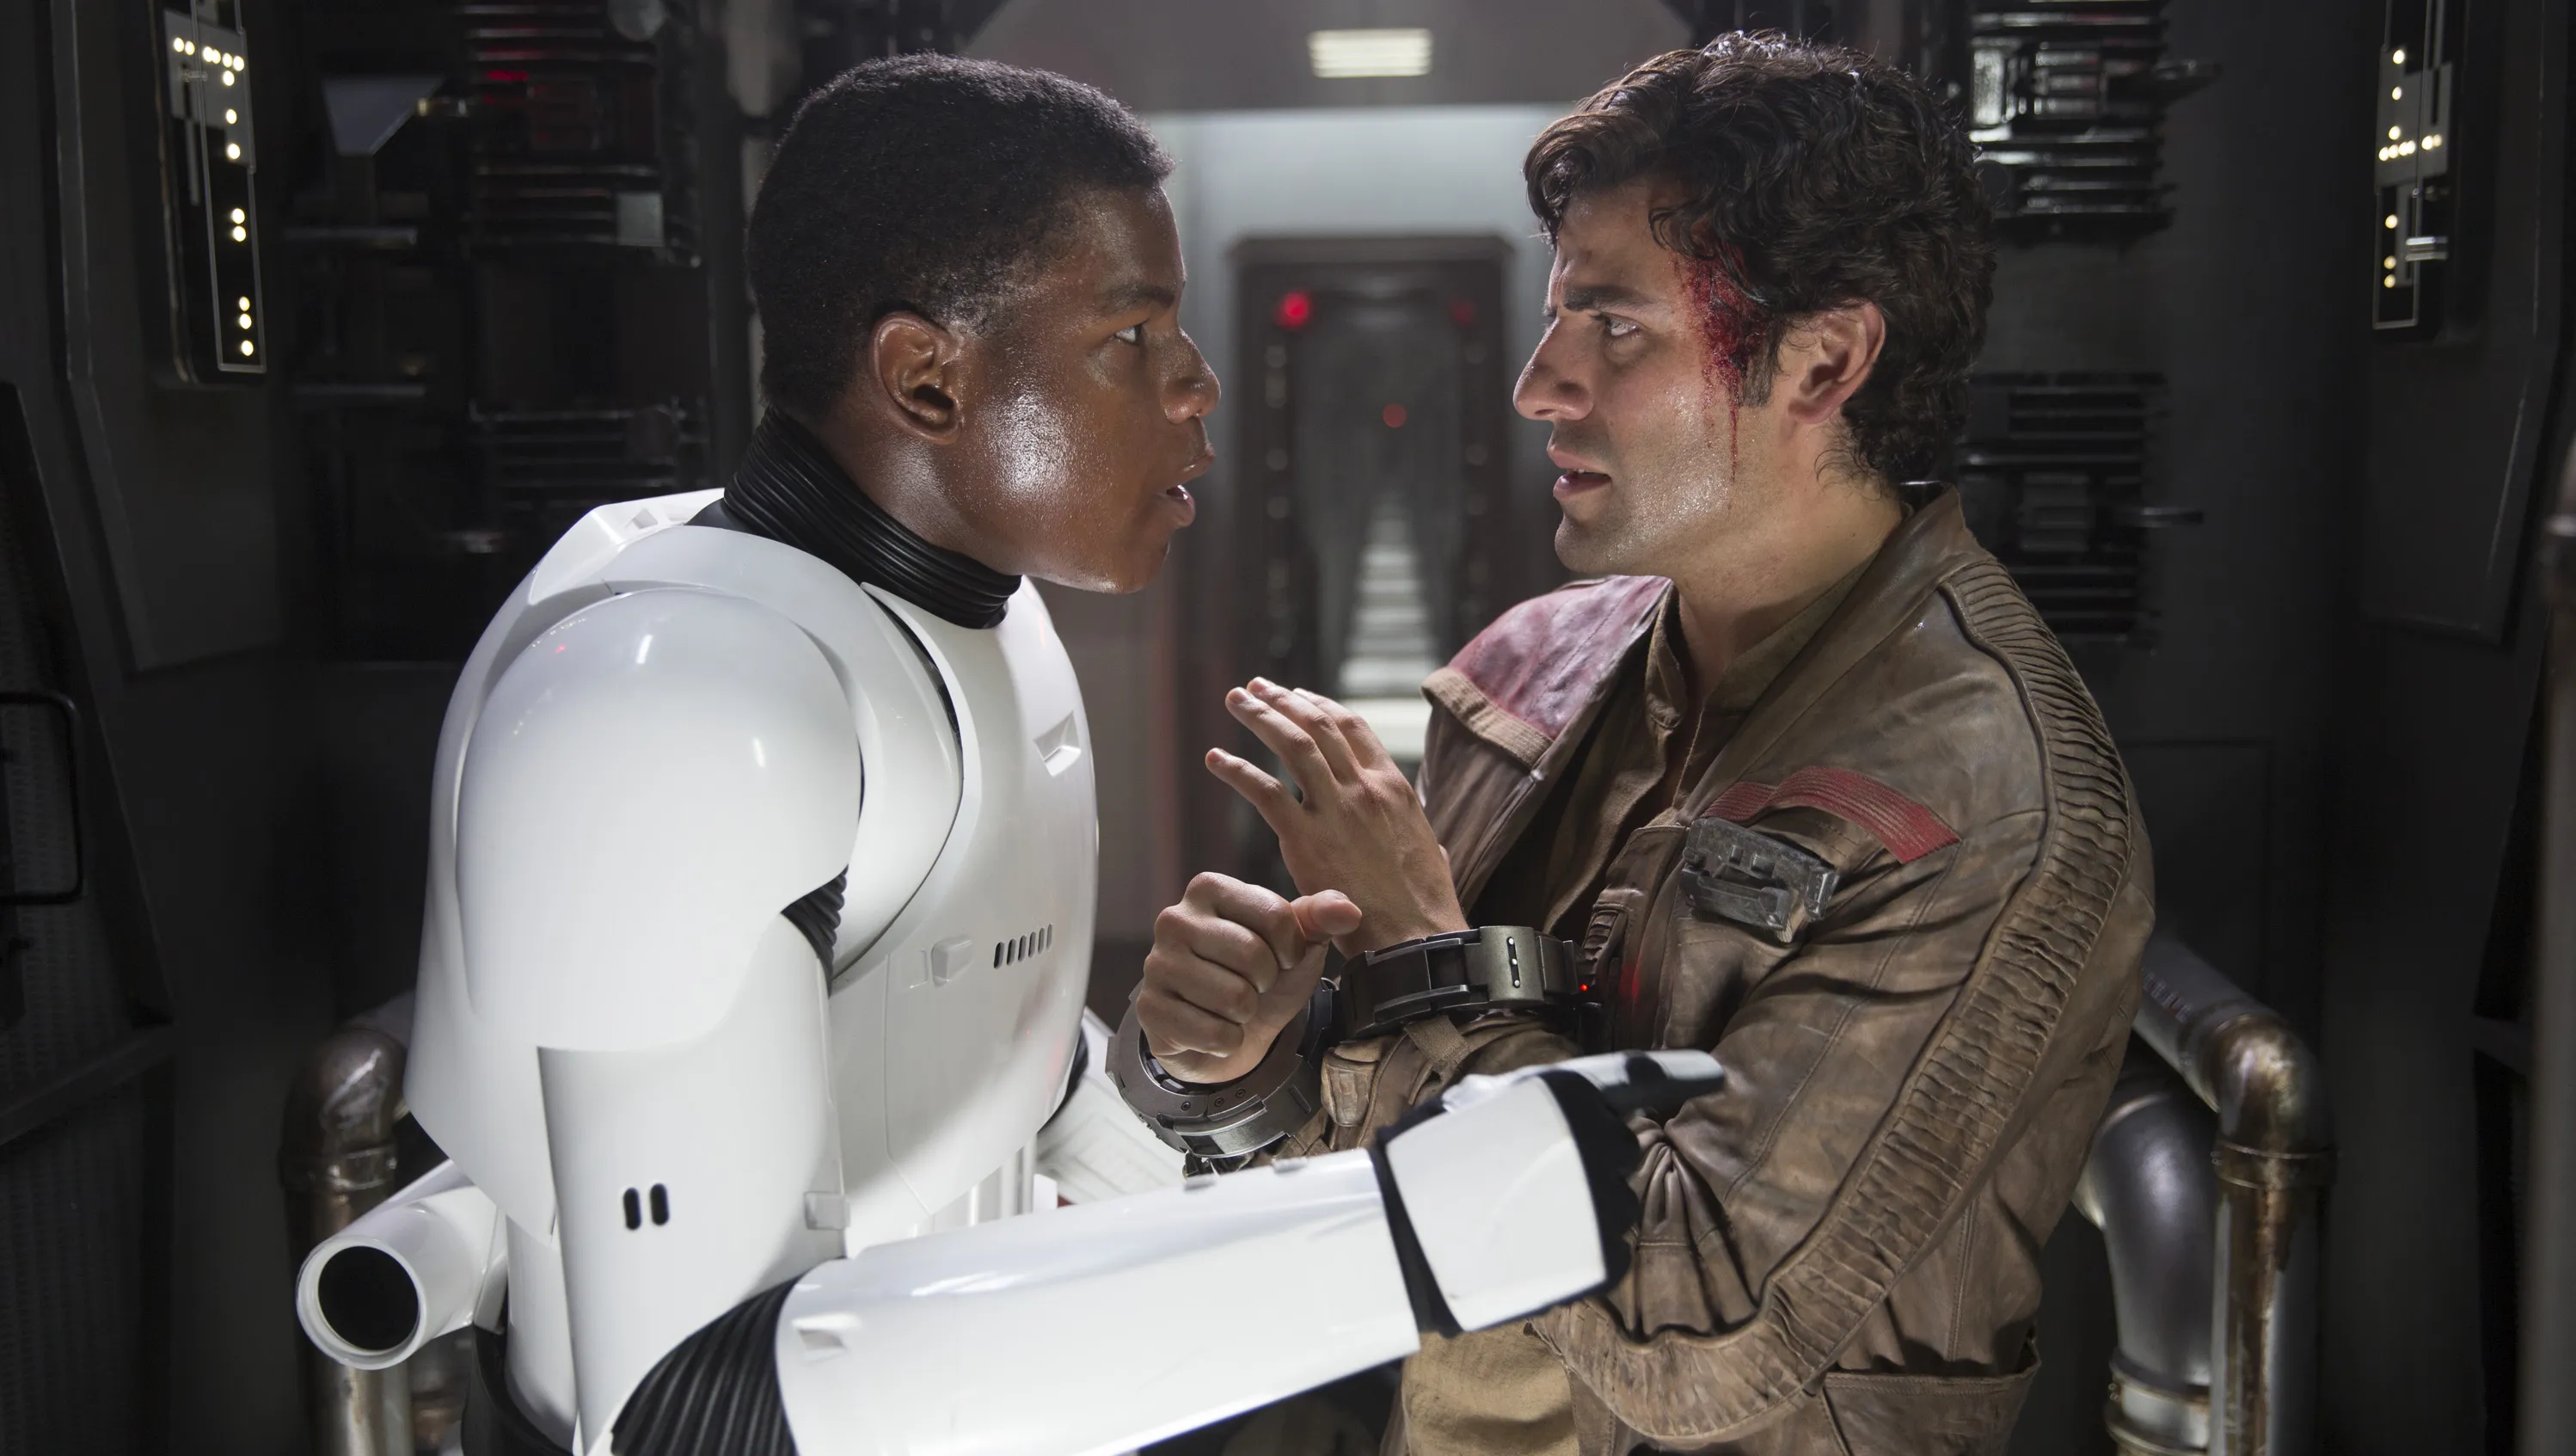 John Boyega as Finn in Stormtrooper armor facing Oscar Isaac as Poe Dameron